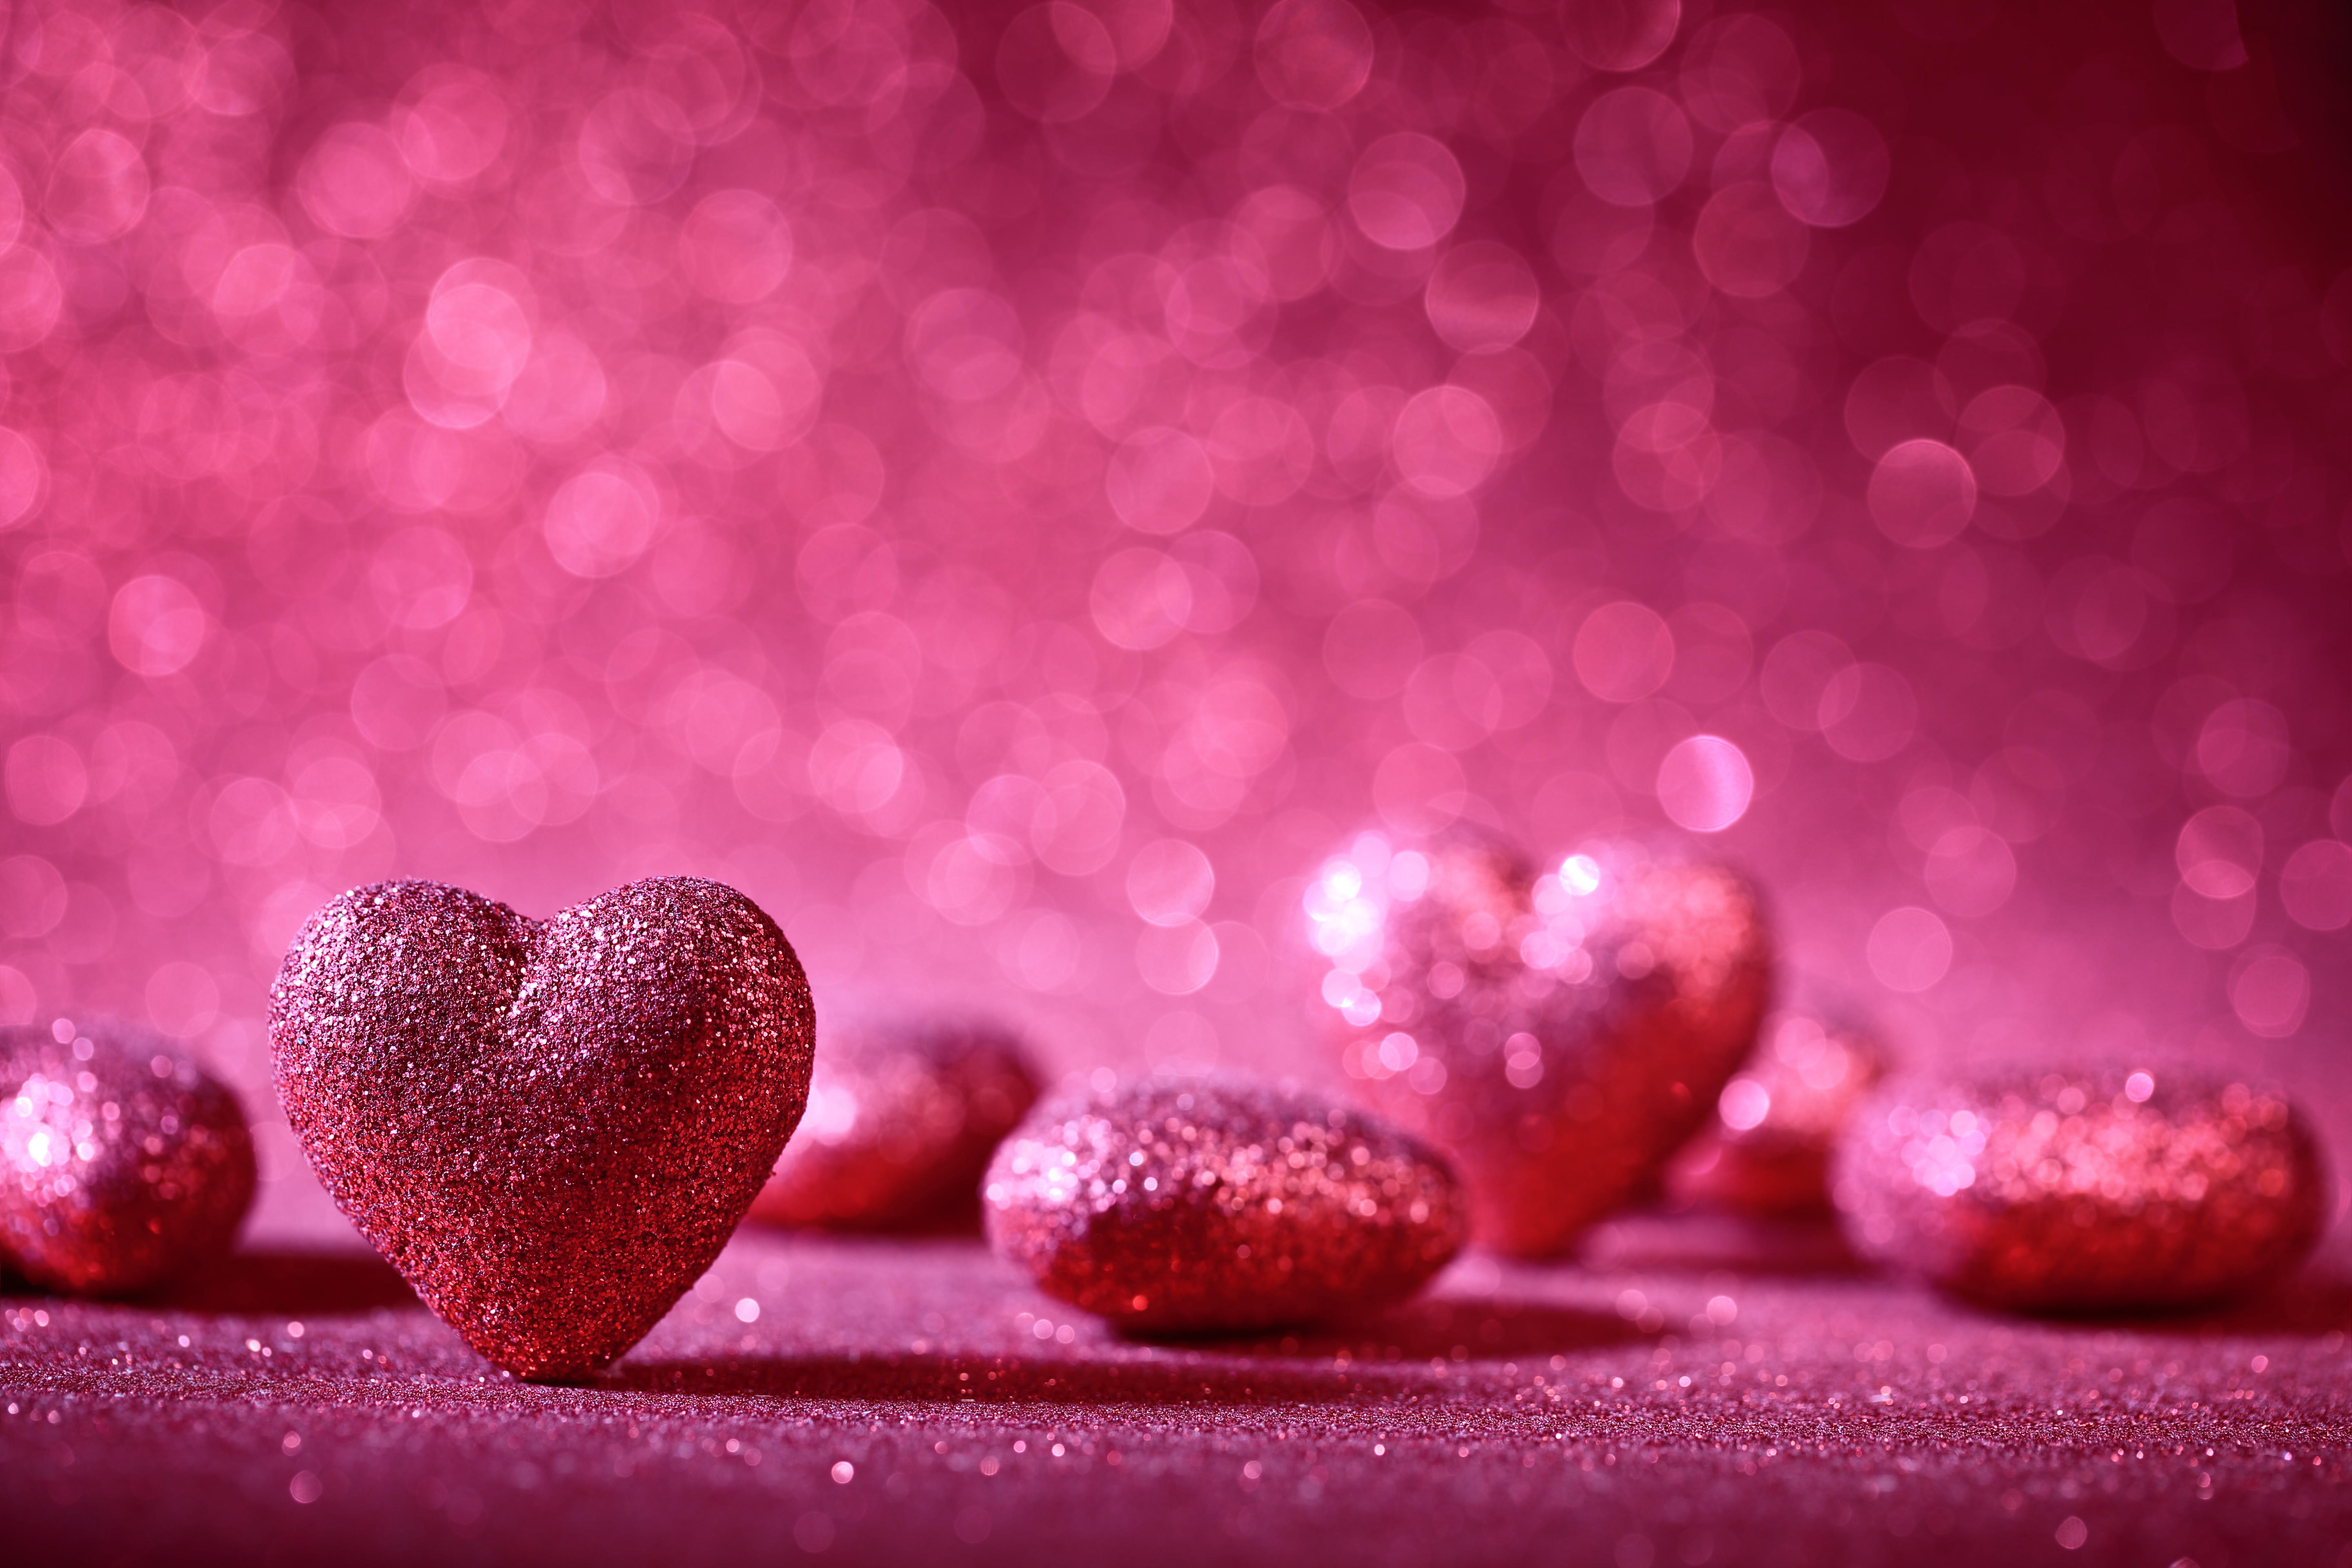 Free photo Glittery pink hearts